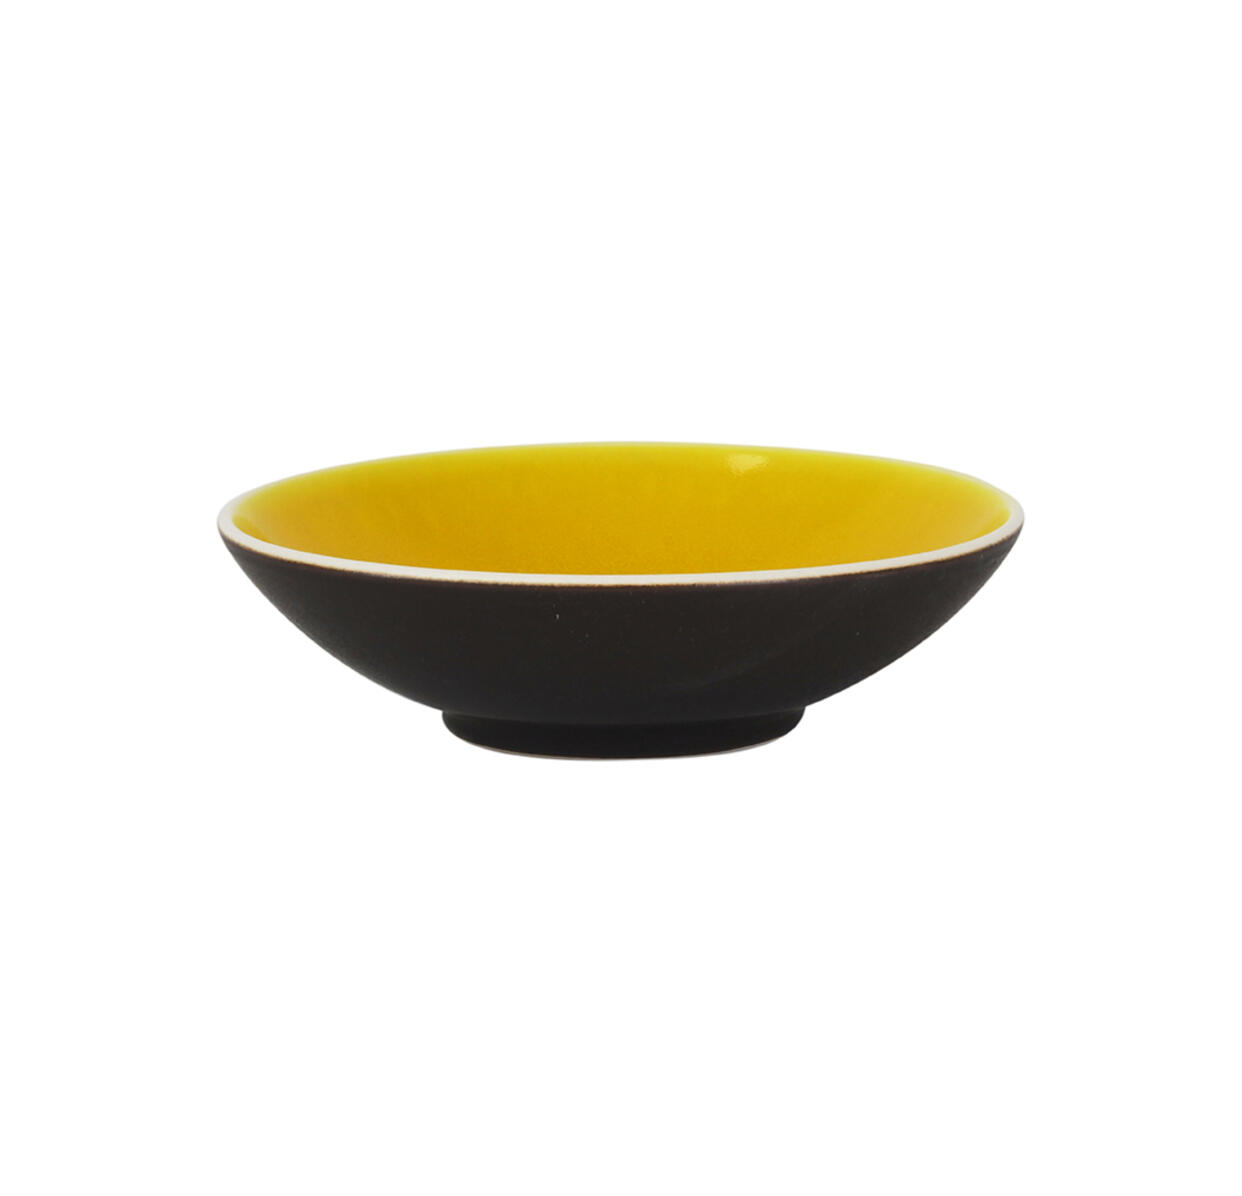 soup plate tourron citron ceramic manufacturer